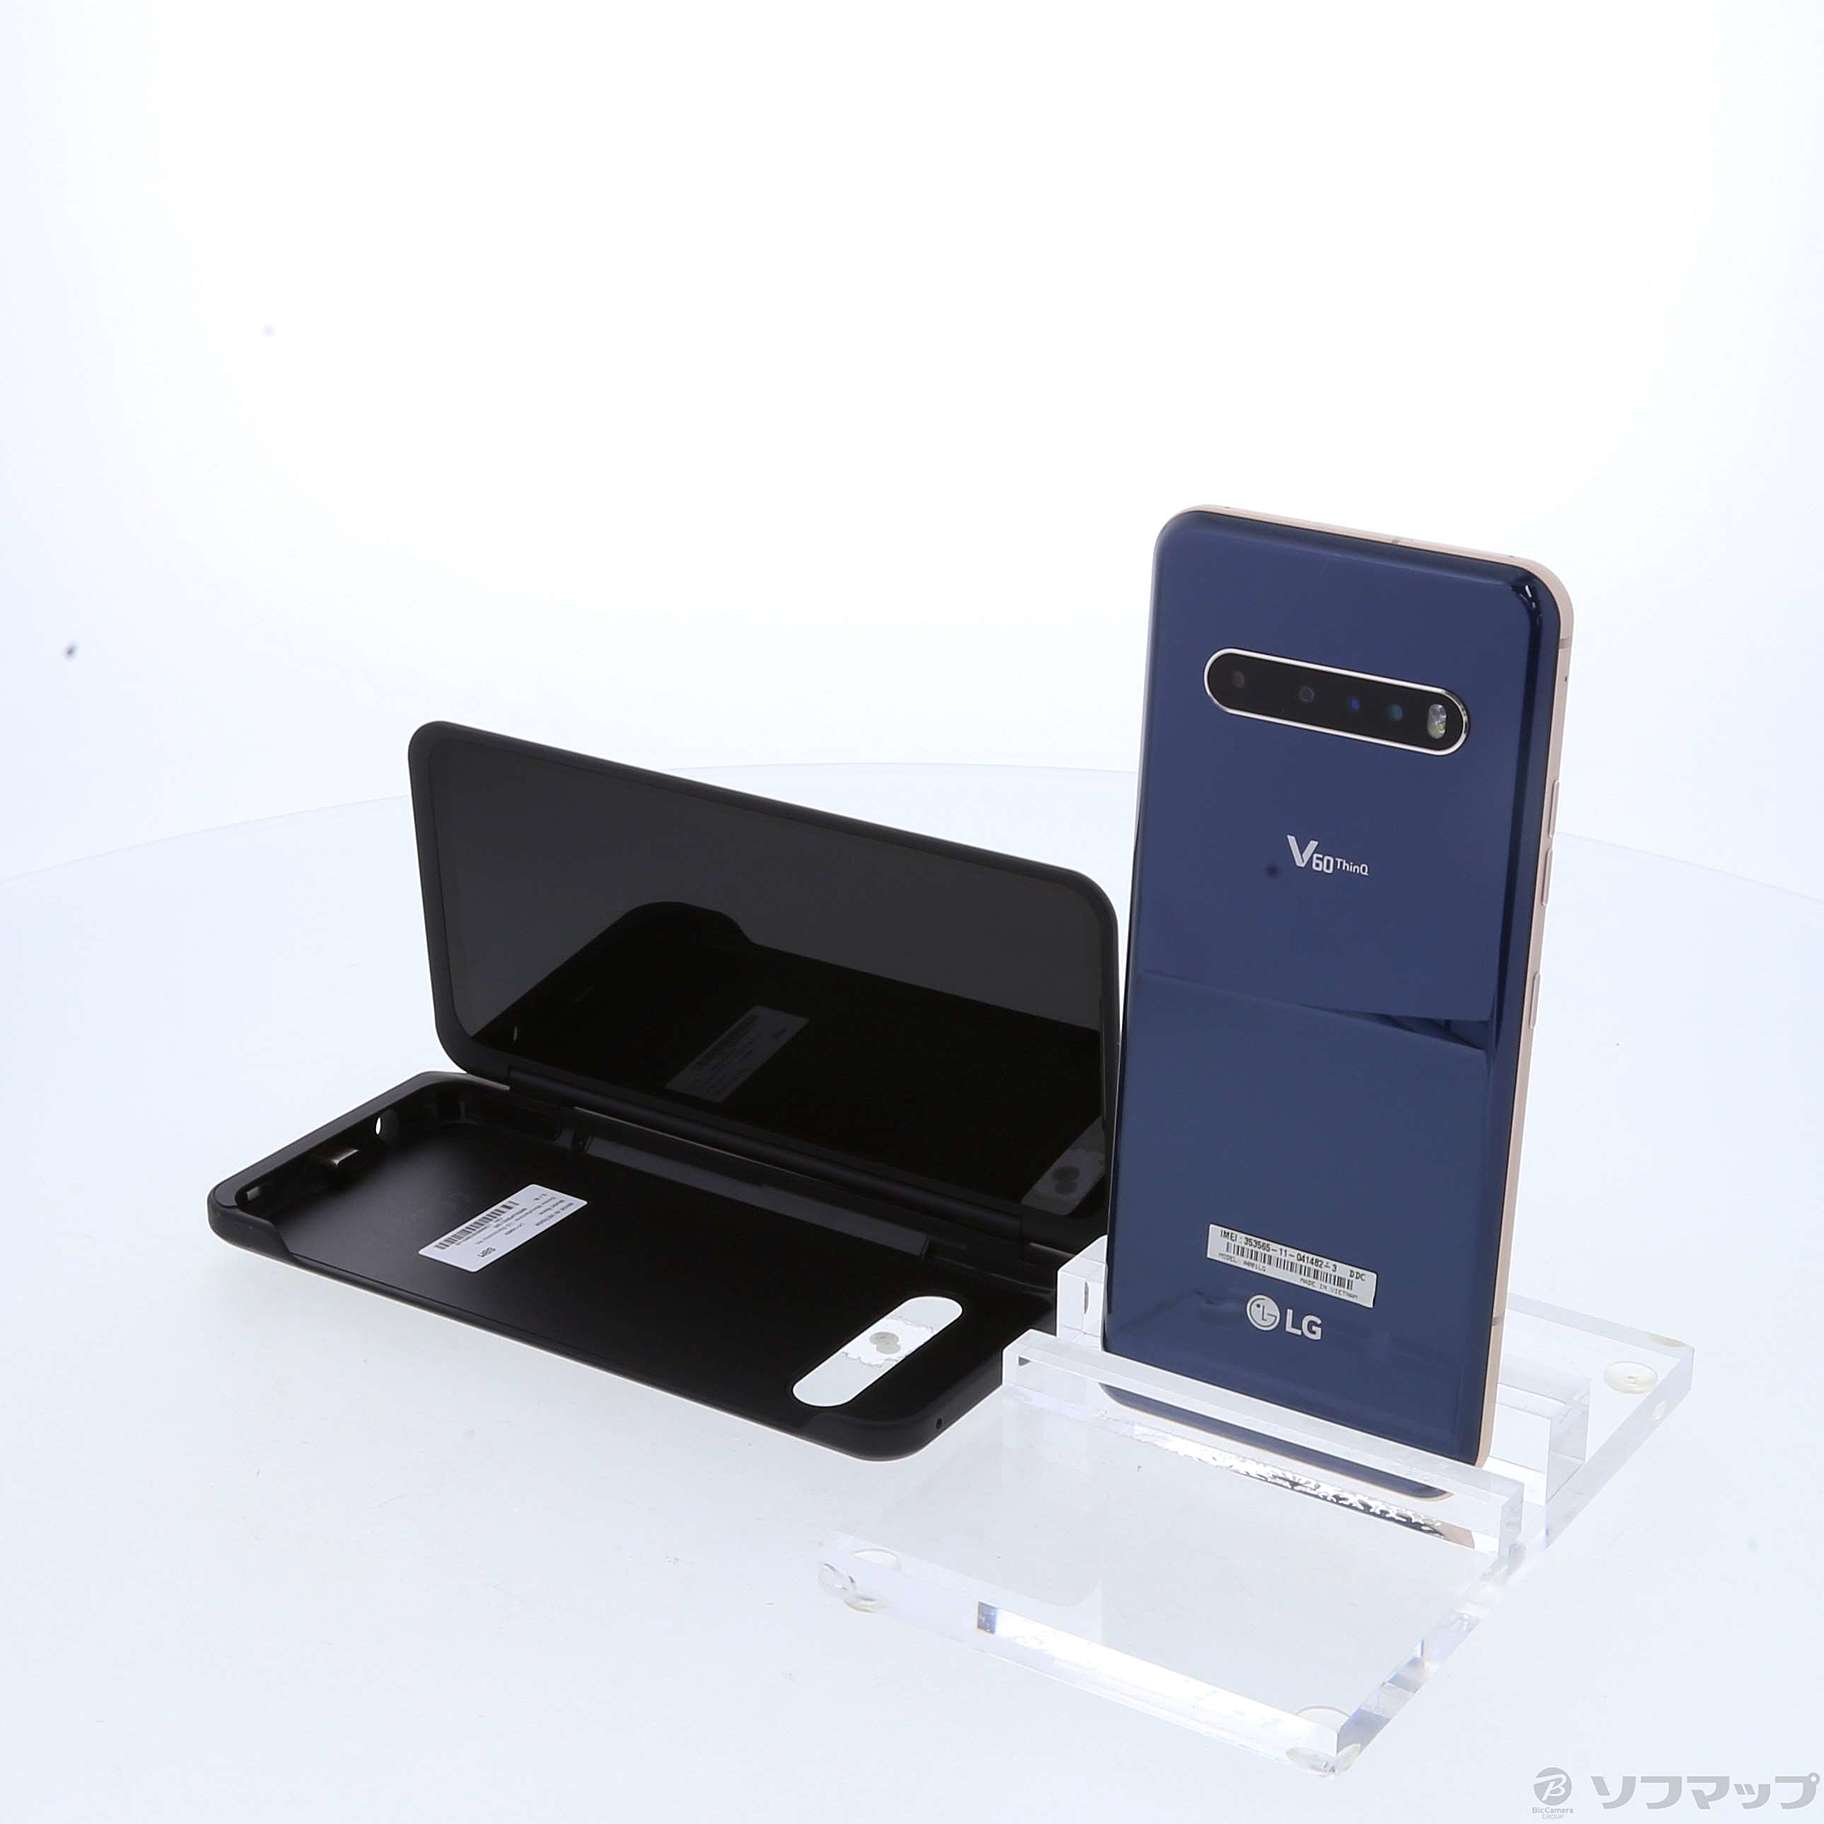 ◆新品未使用softbank LG V60 ThinQ 5G ブルーA001LG